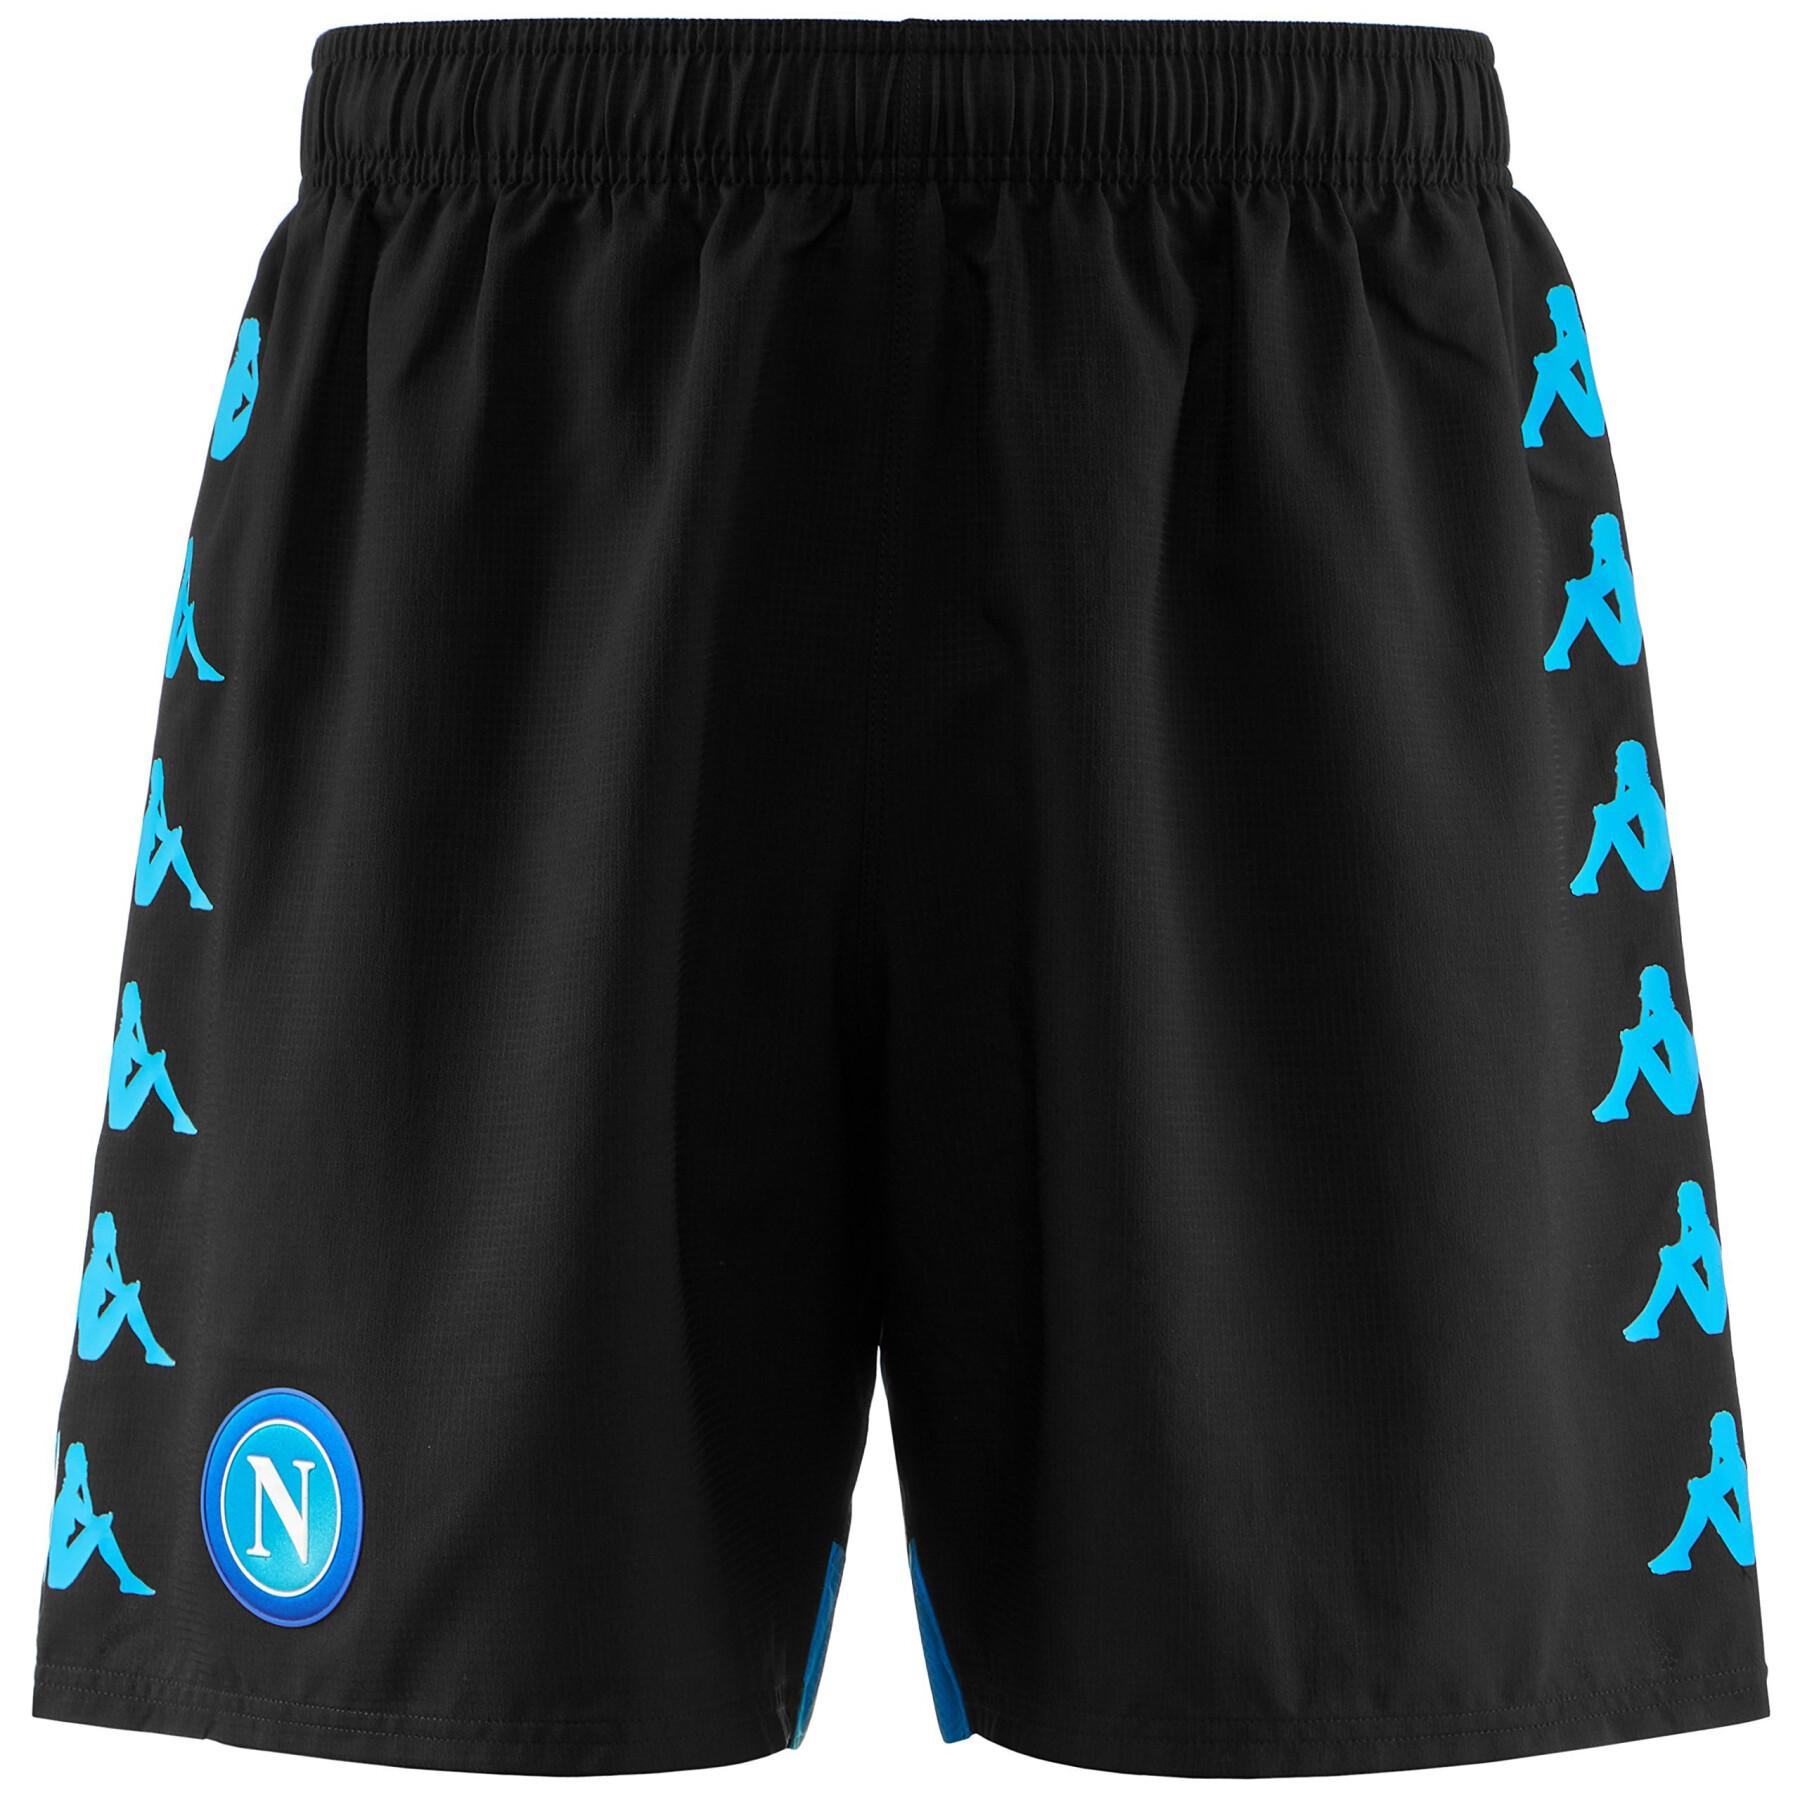 Outdoor shorts SSC Napoli 2018/19